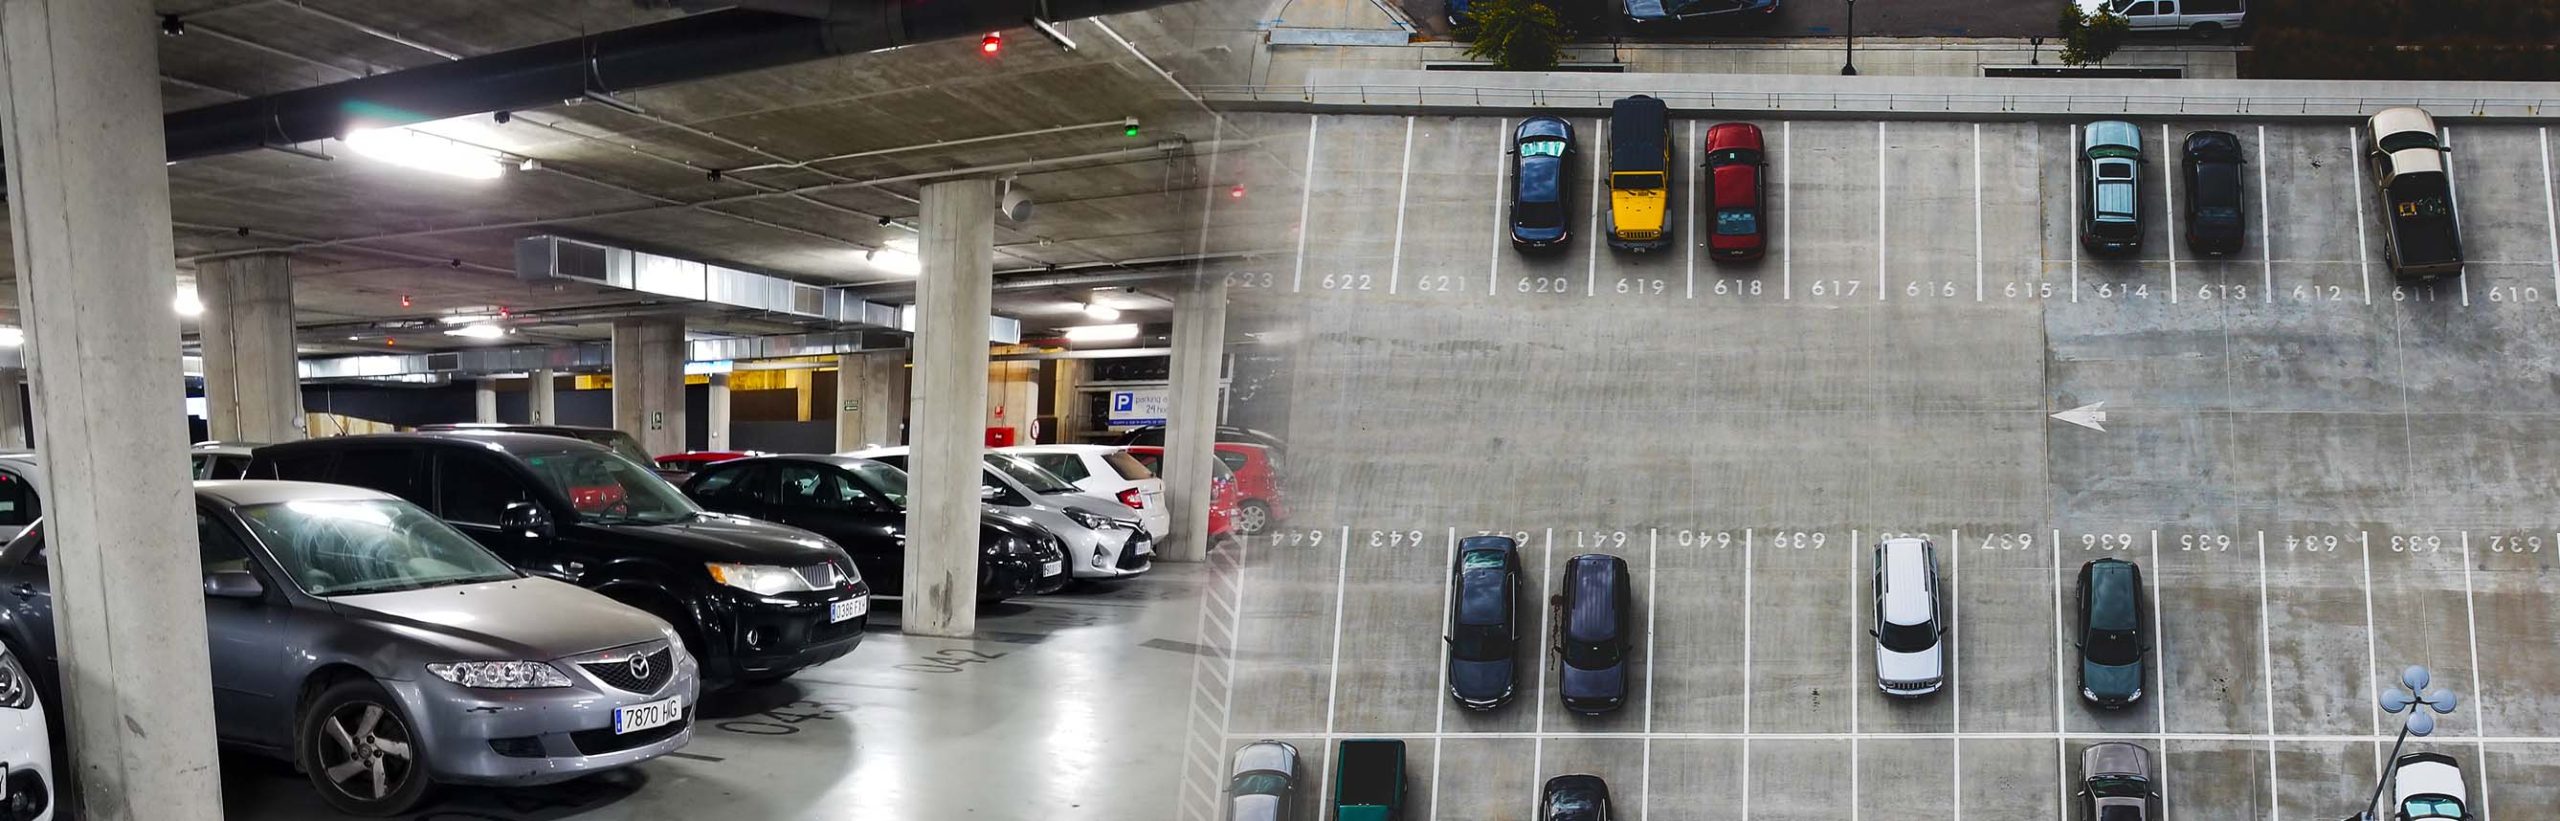 AI Parking Assist